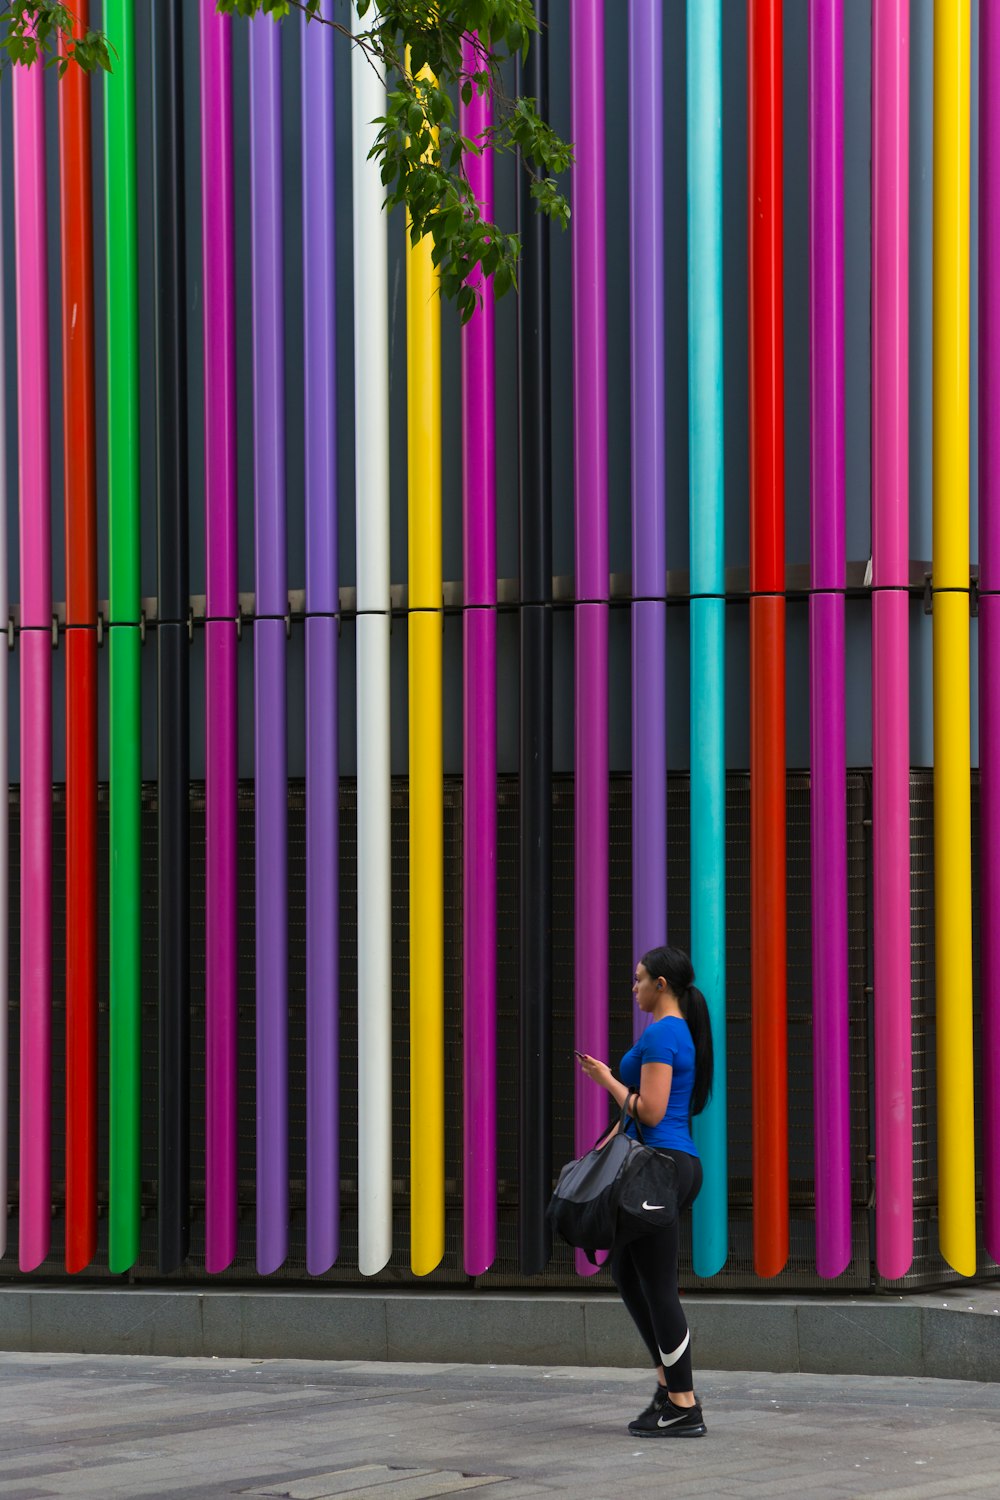 昼間、色とりどりの建物の壁のそばに立つ女性